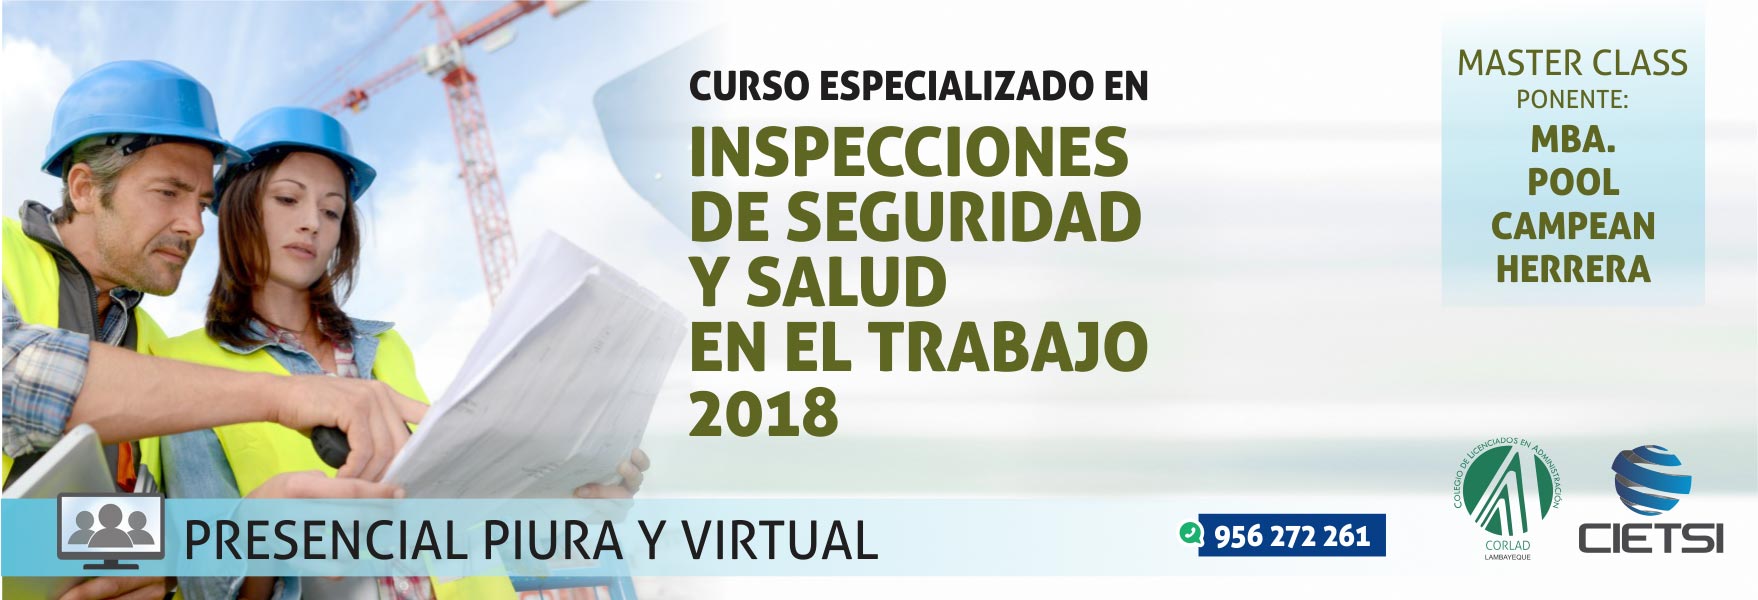 curso especializado inspecciones de seguridad y salud en el trabajo 2018